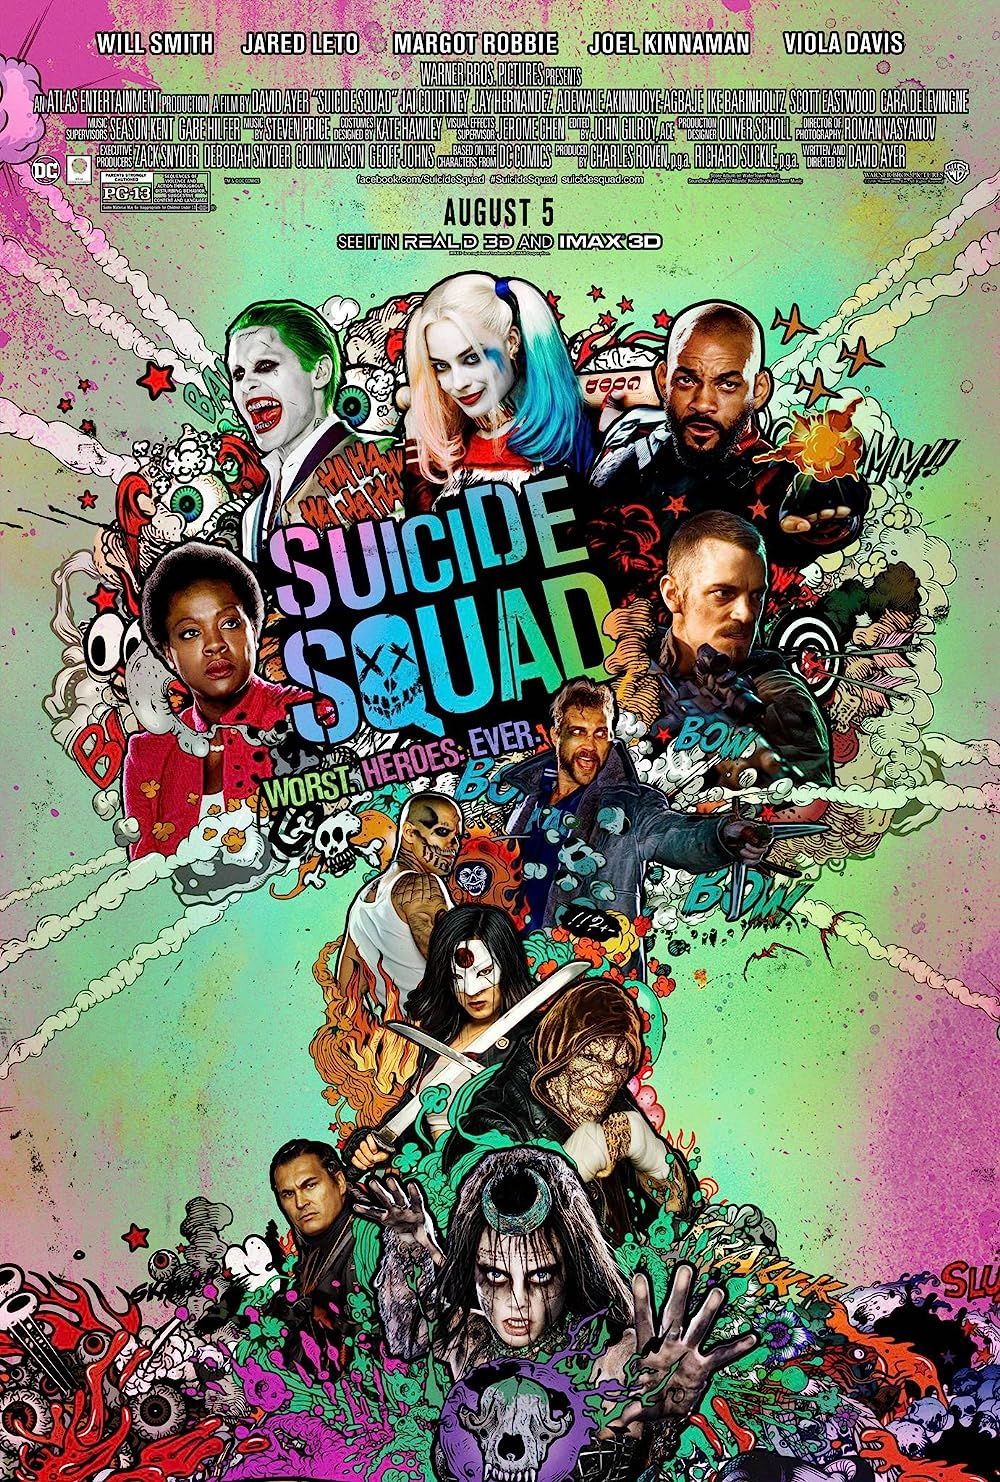 El equipo en el cartel de Suicide Squad 2016